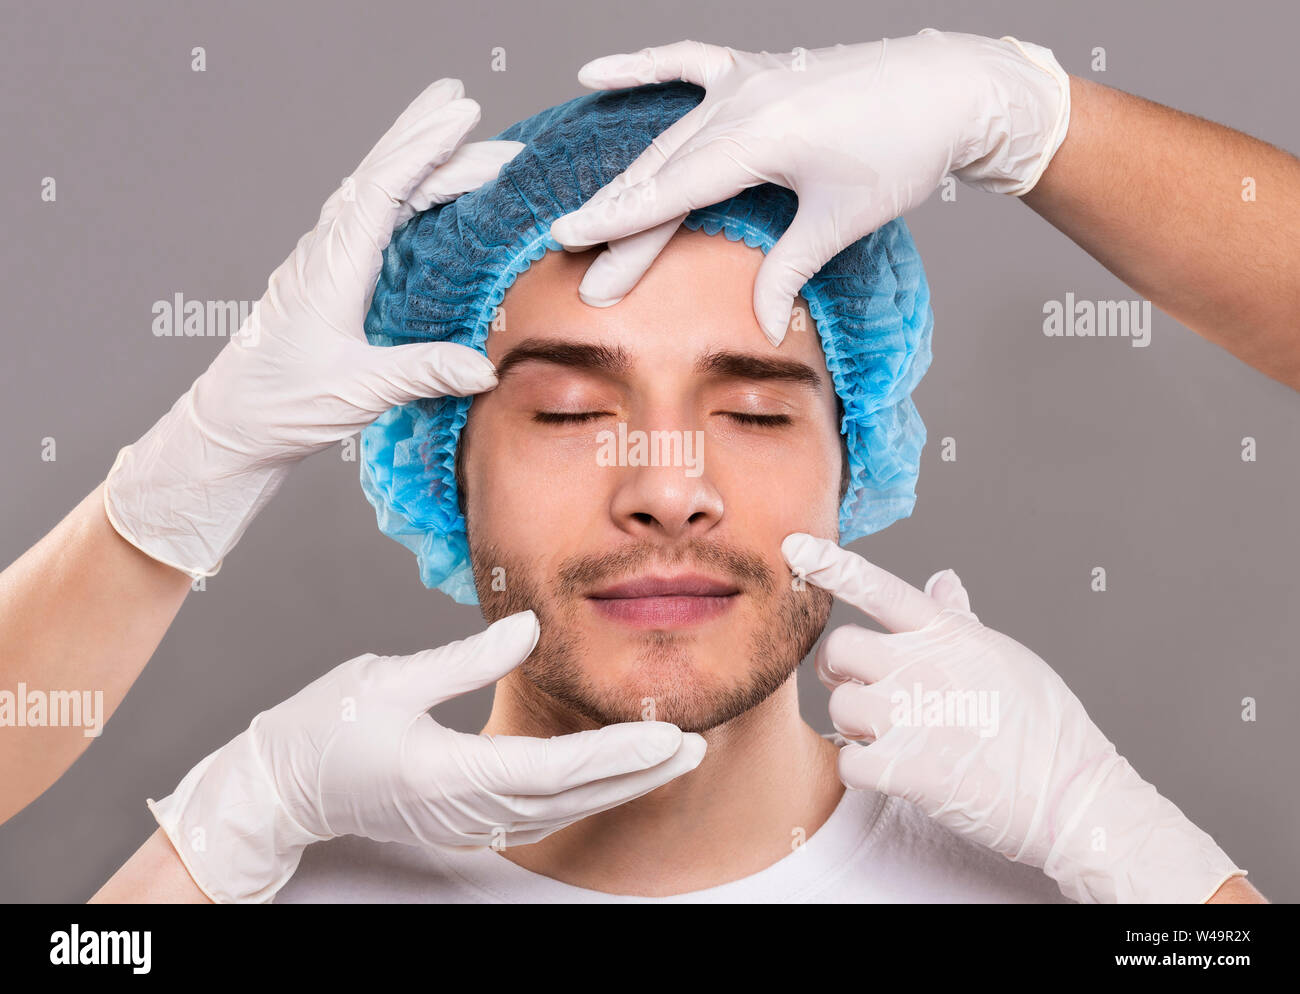 Doctor's Hände in Handschuhen prüfen Gesicht des jungen Mannes Stockfoto